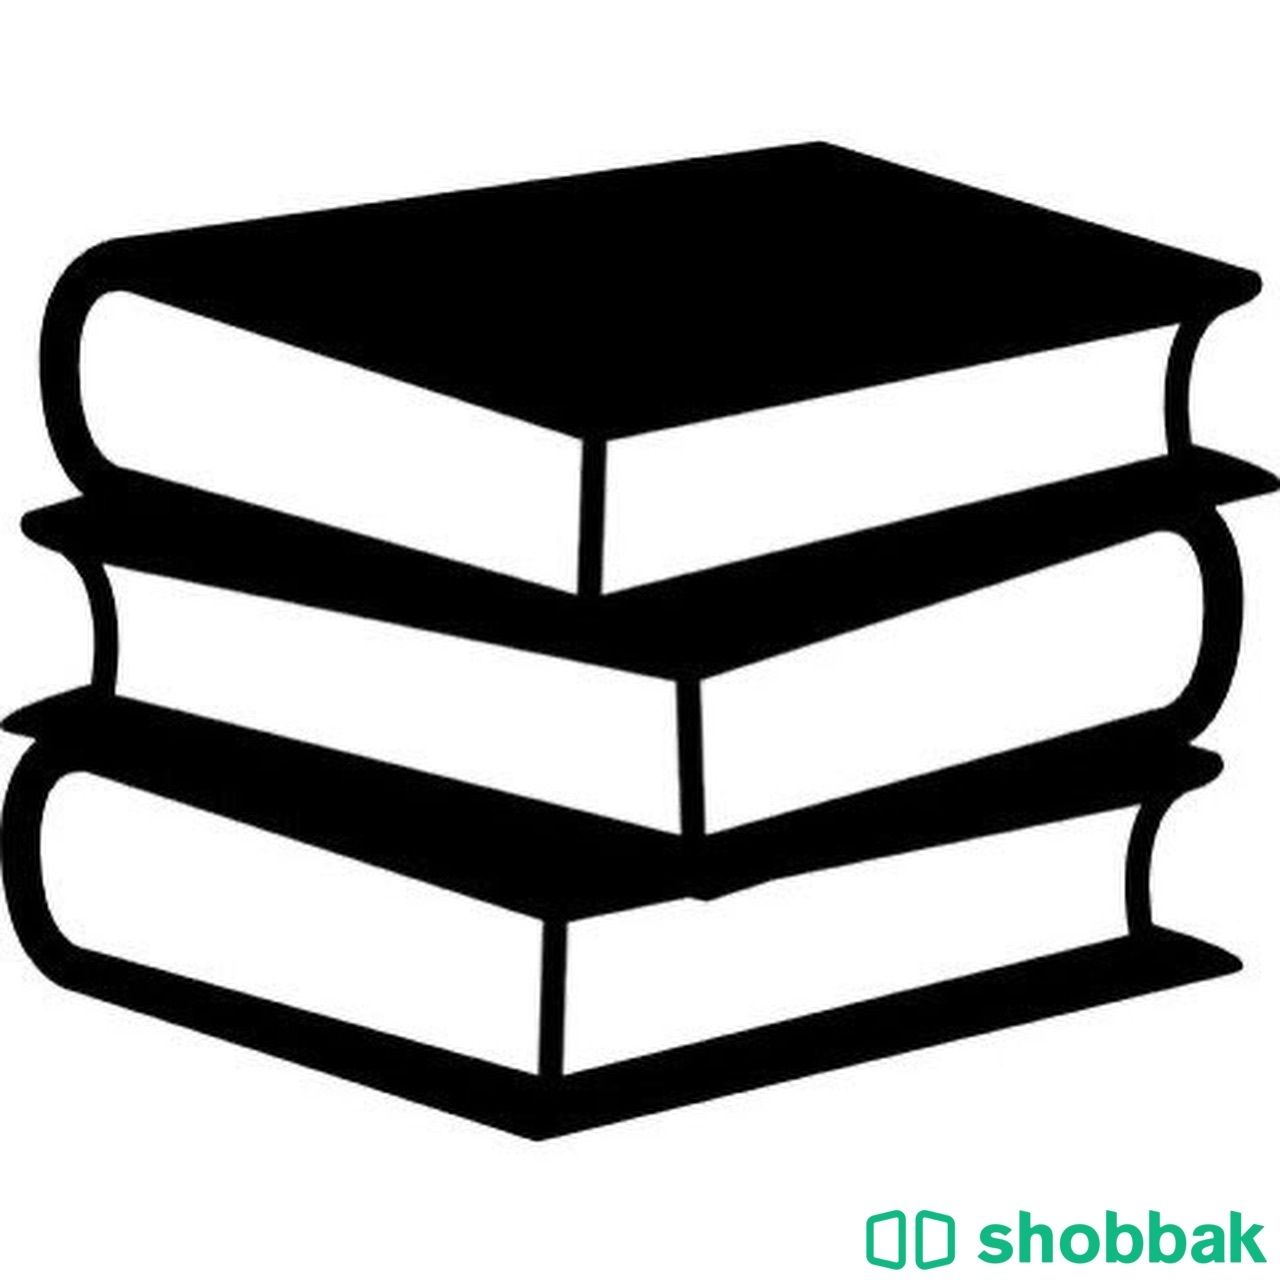 ١٠٠٠ كتاب الكتروني ب١٣ ريال وقابل لاعاده البيع Shobbak Saudi Arabia